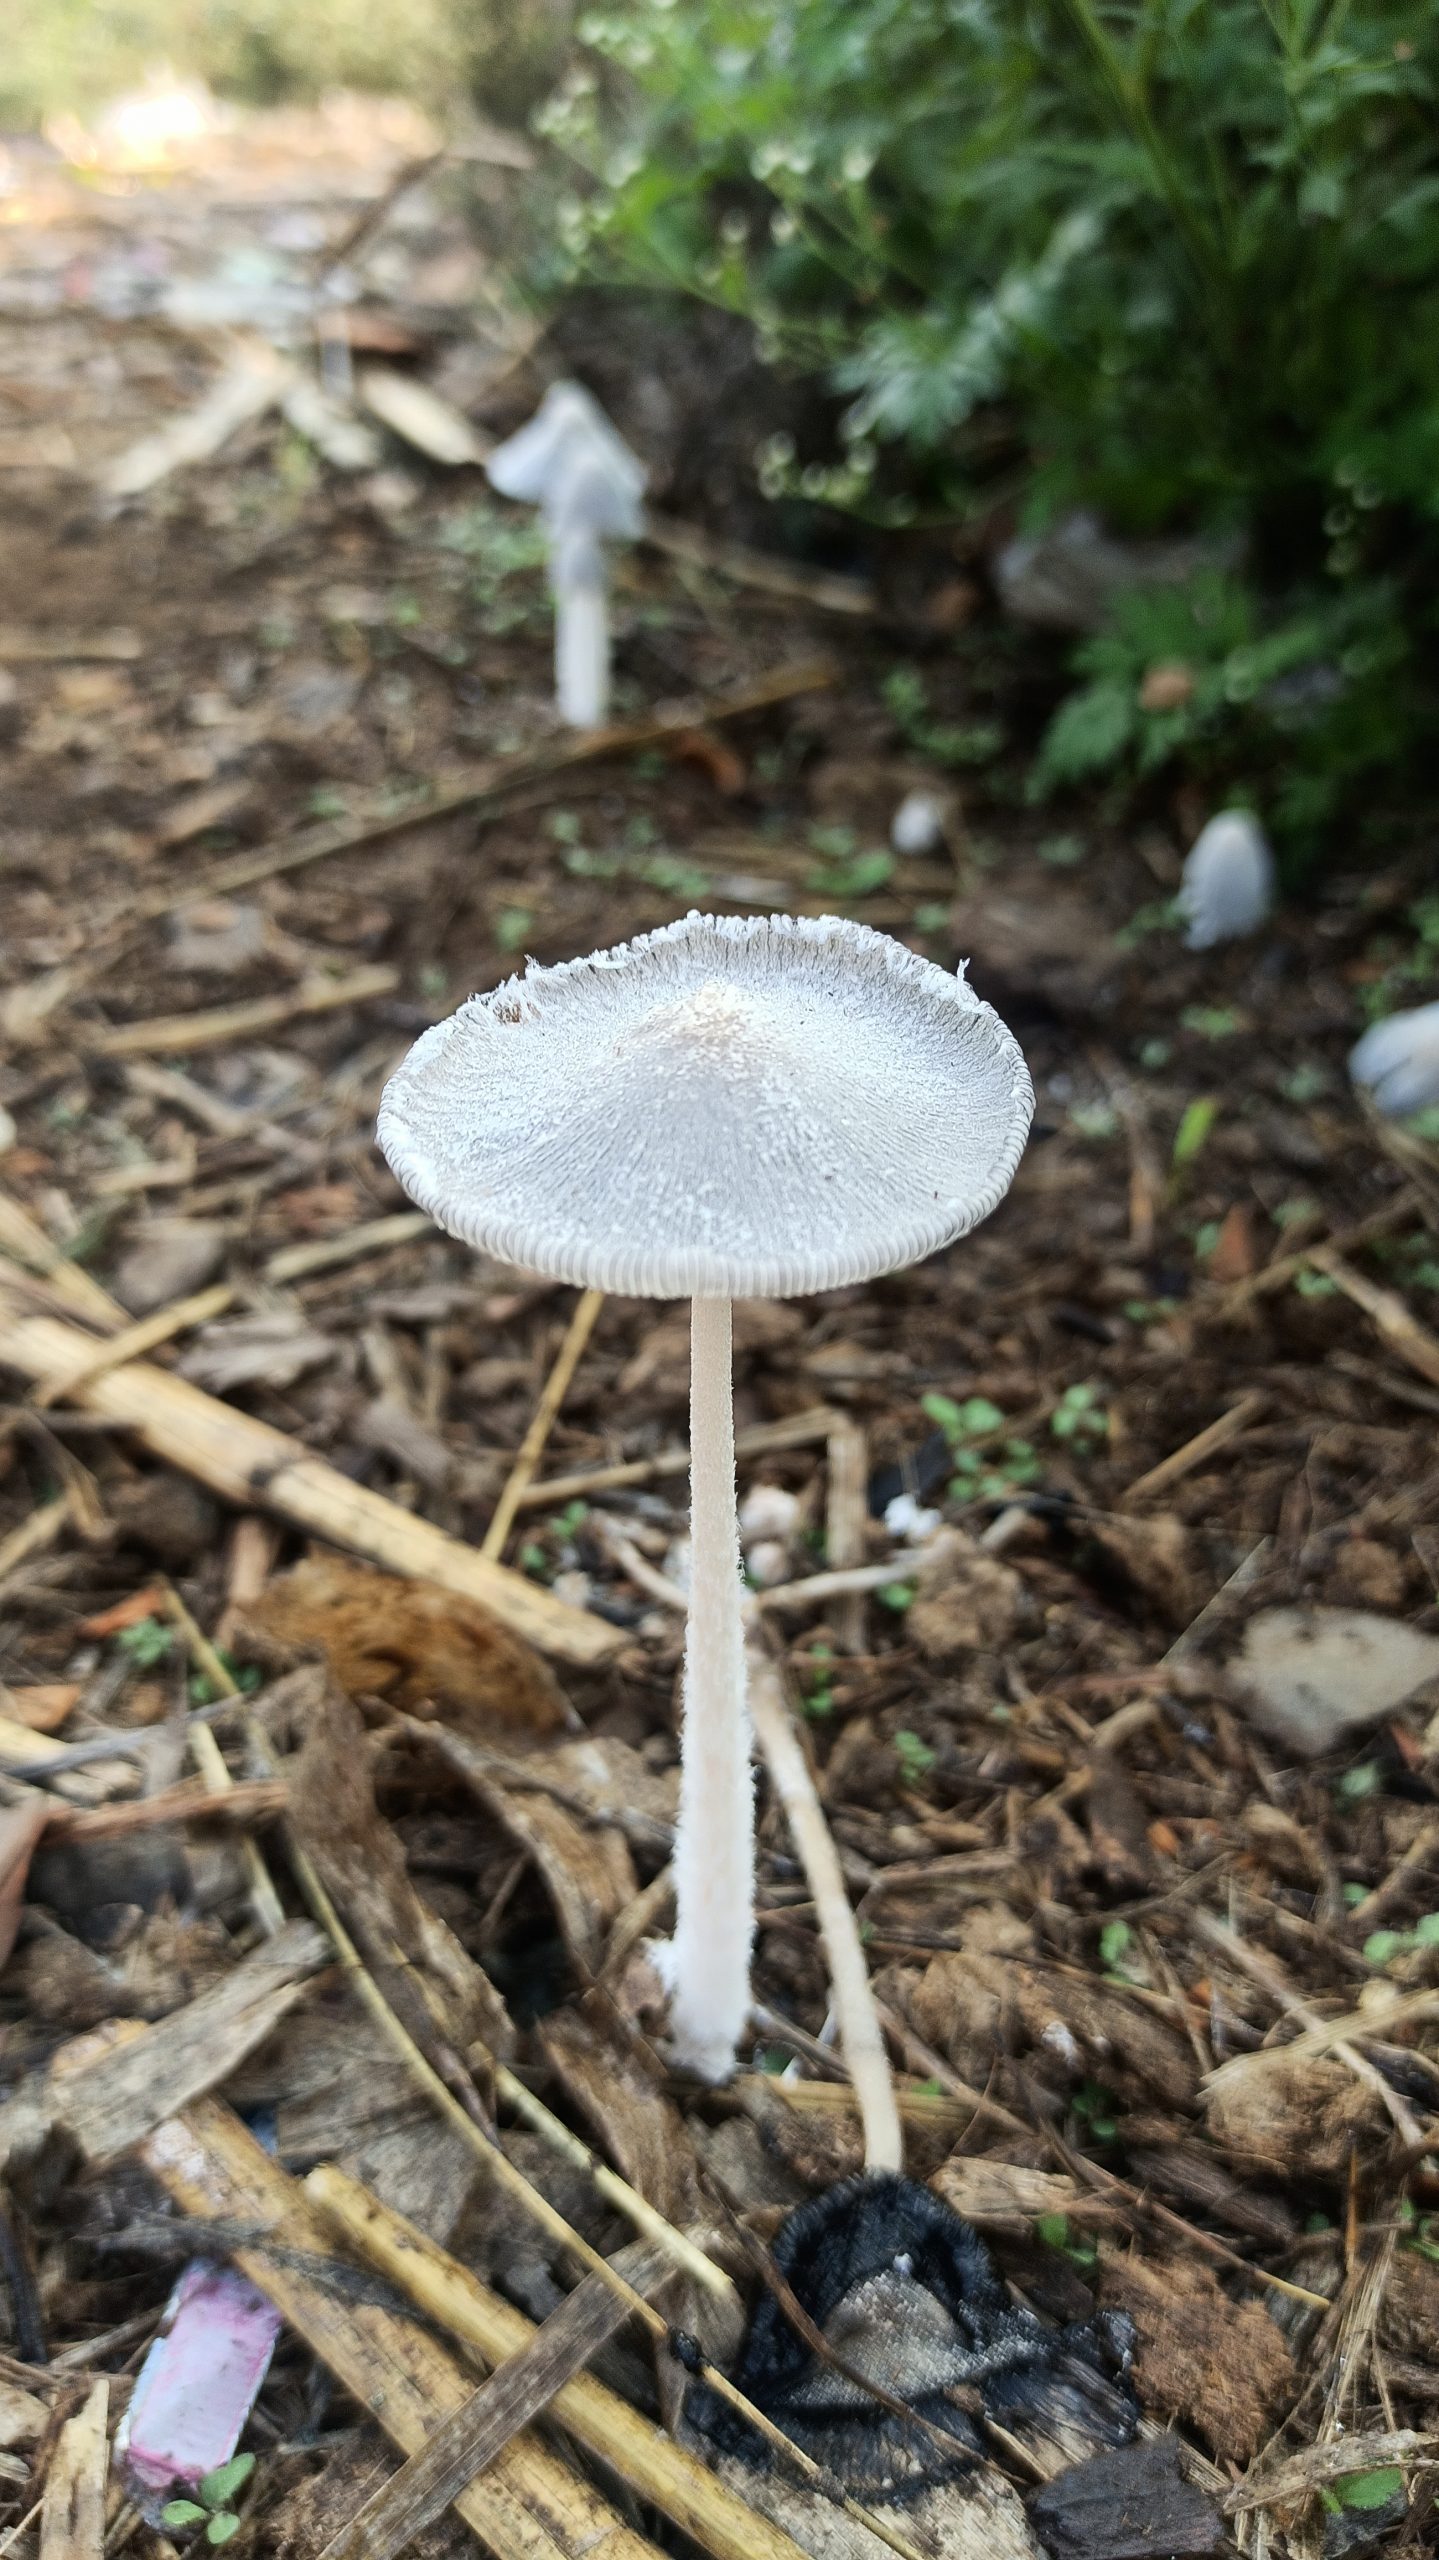 A mushroom plant